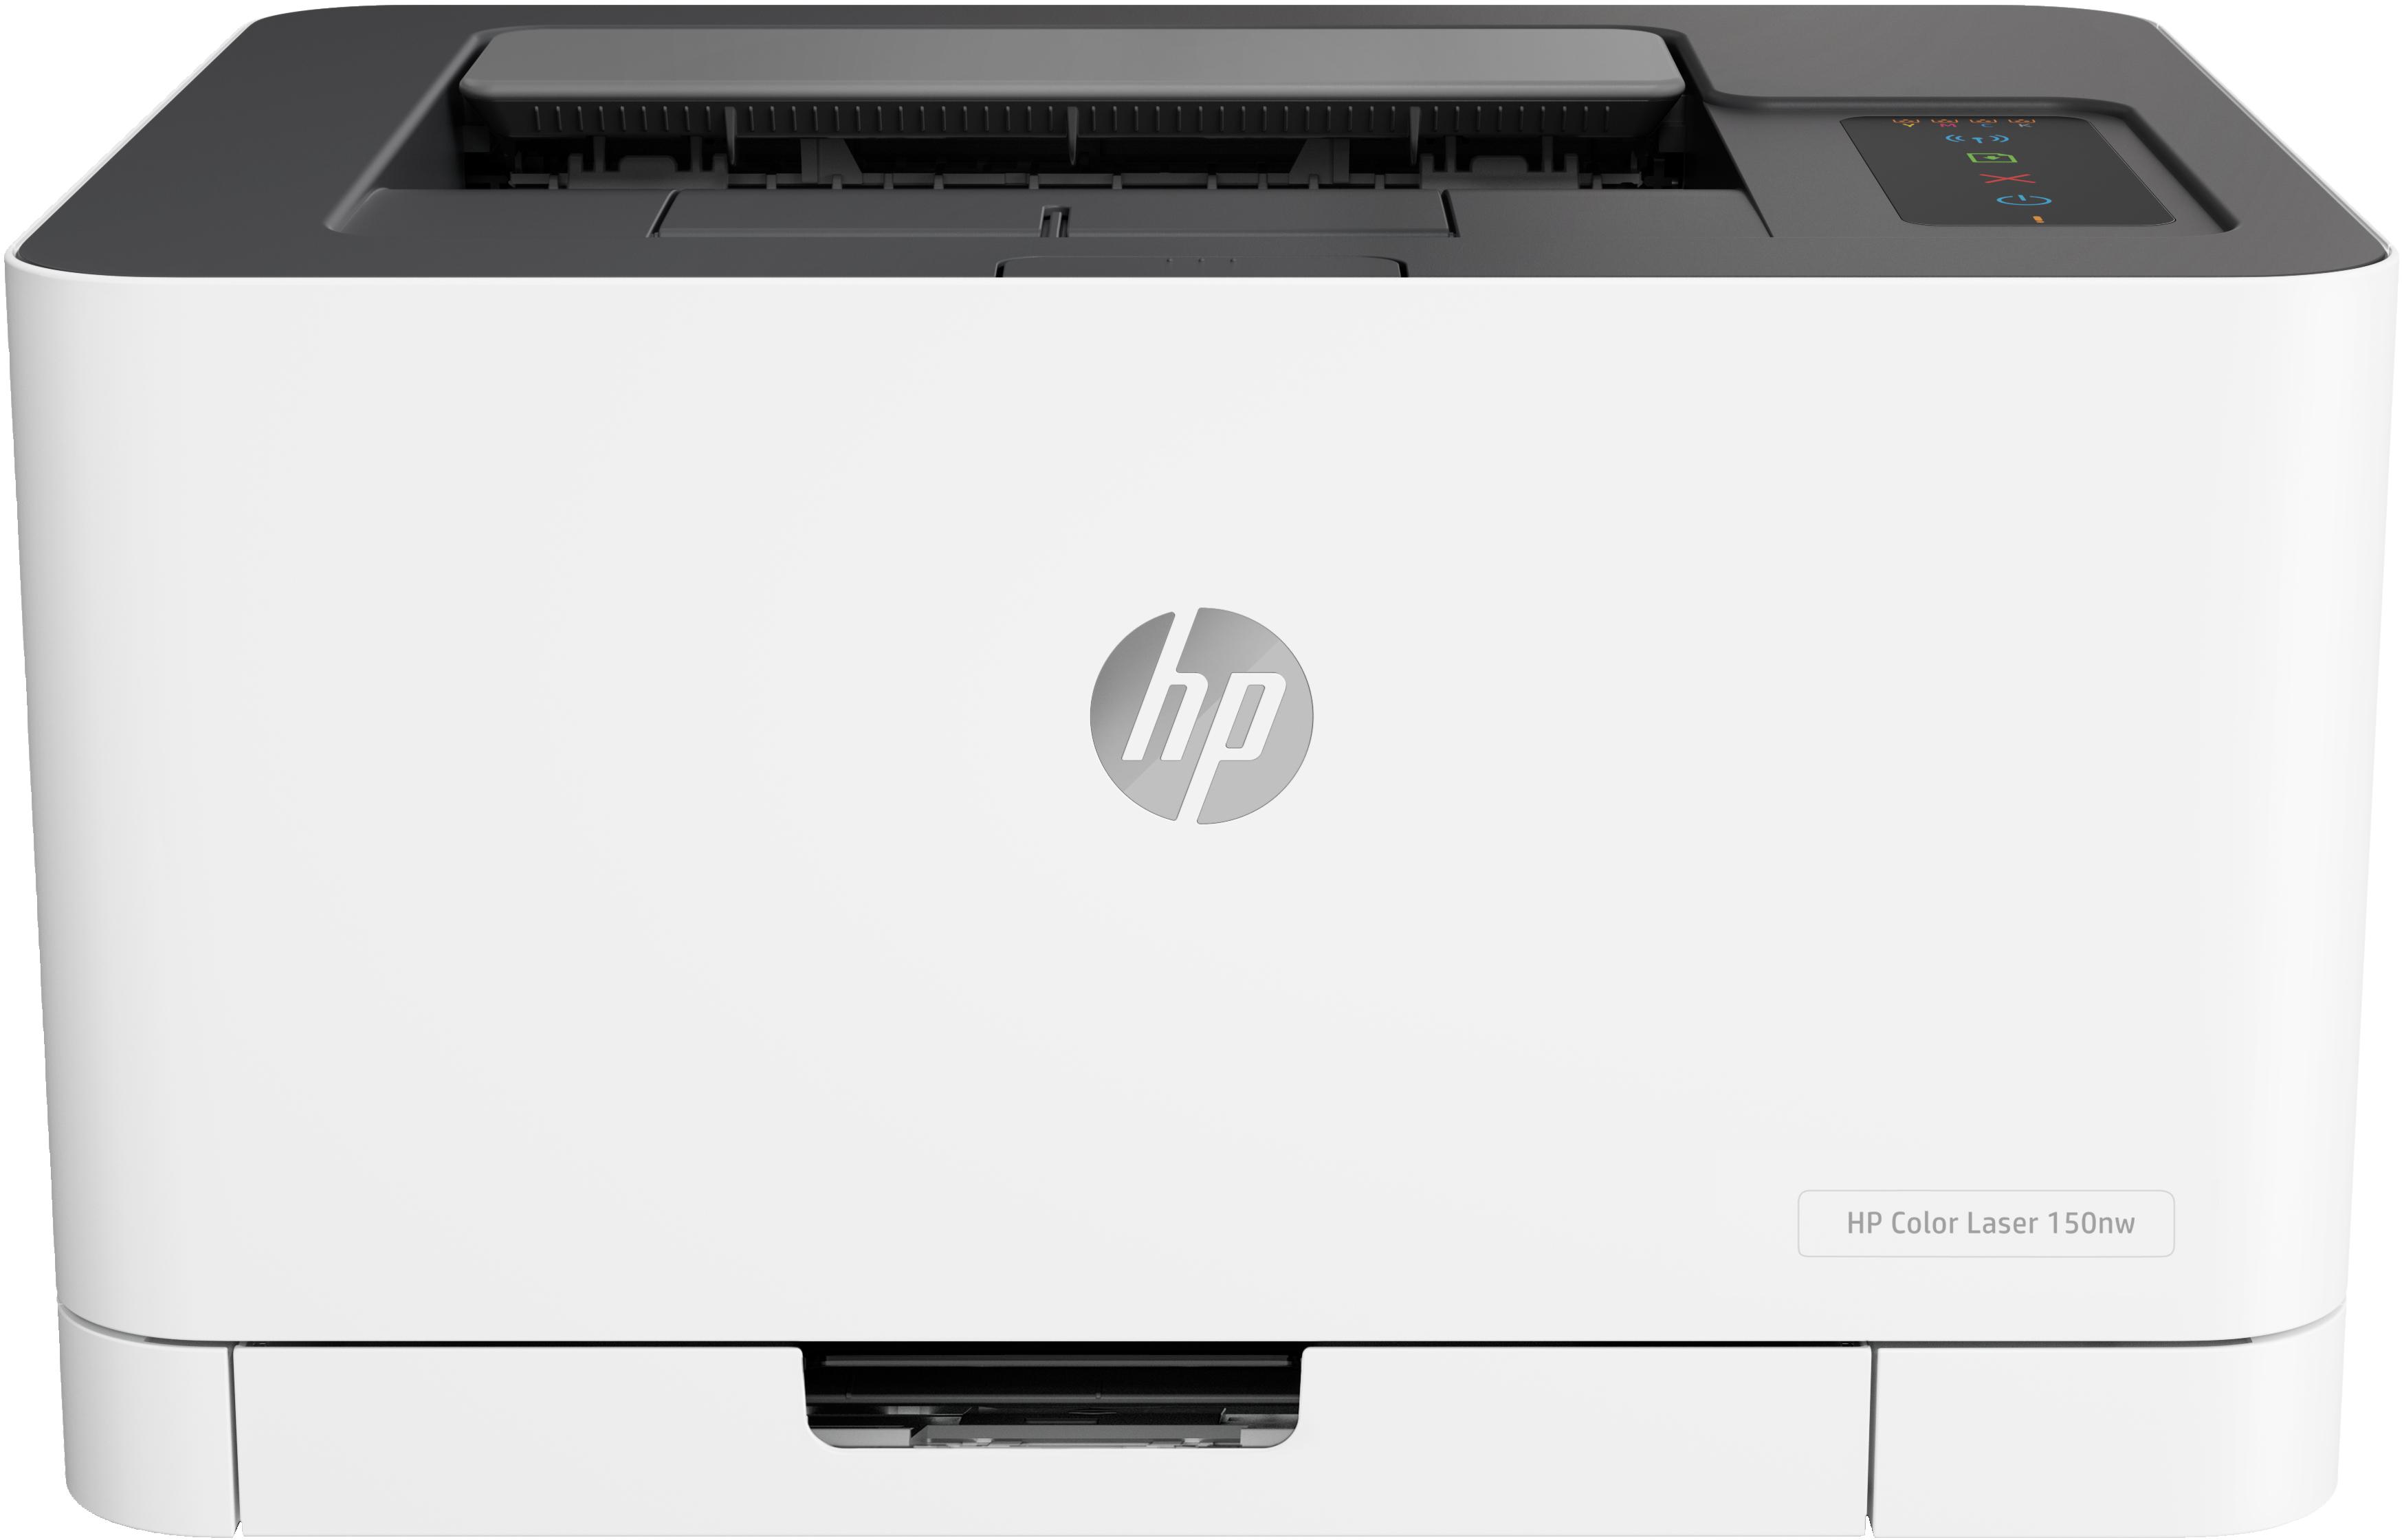 HP - Impresora Inyección de Tinta HP Color Laser 150nw